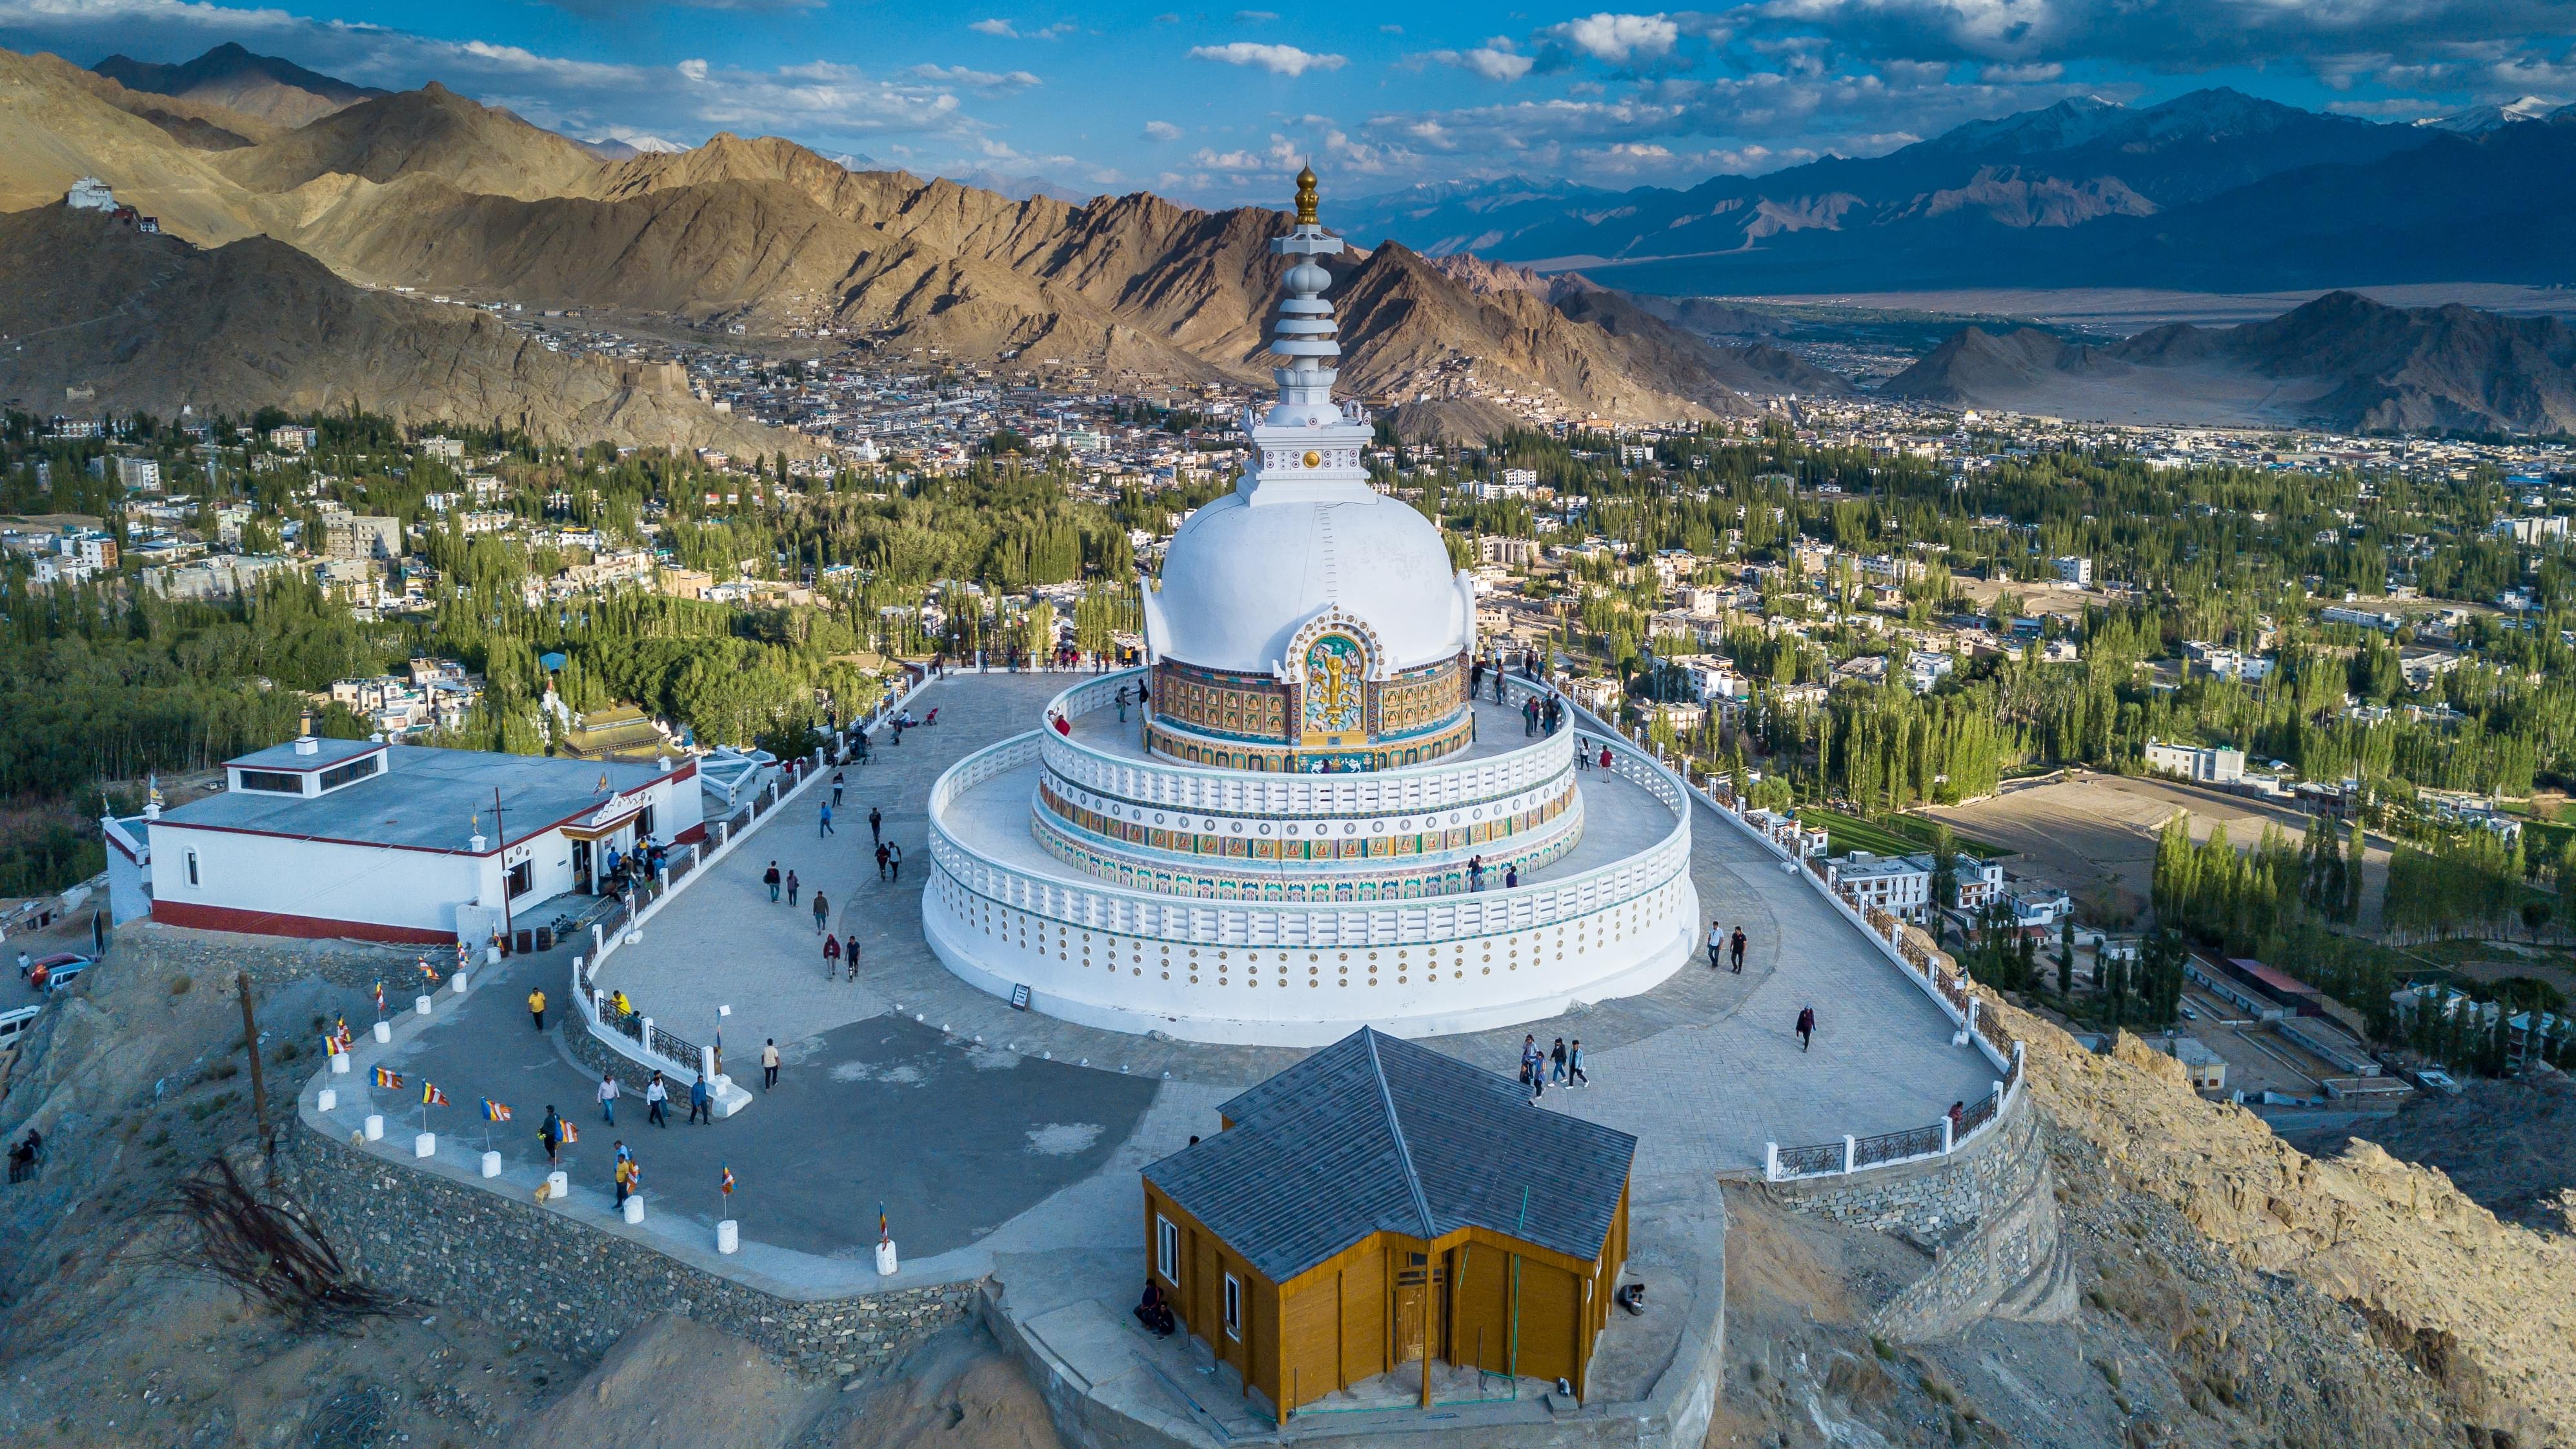 Structure of Shanti Stupa